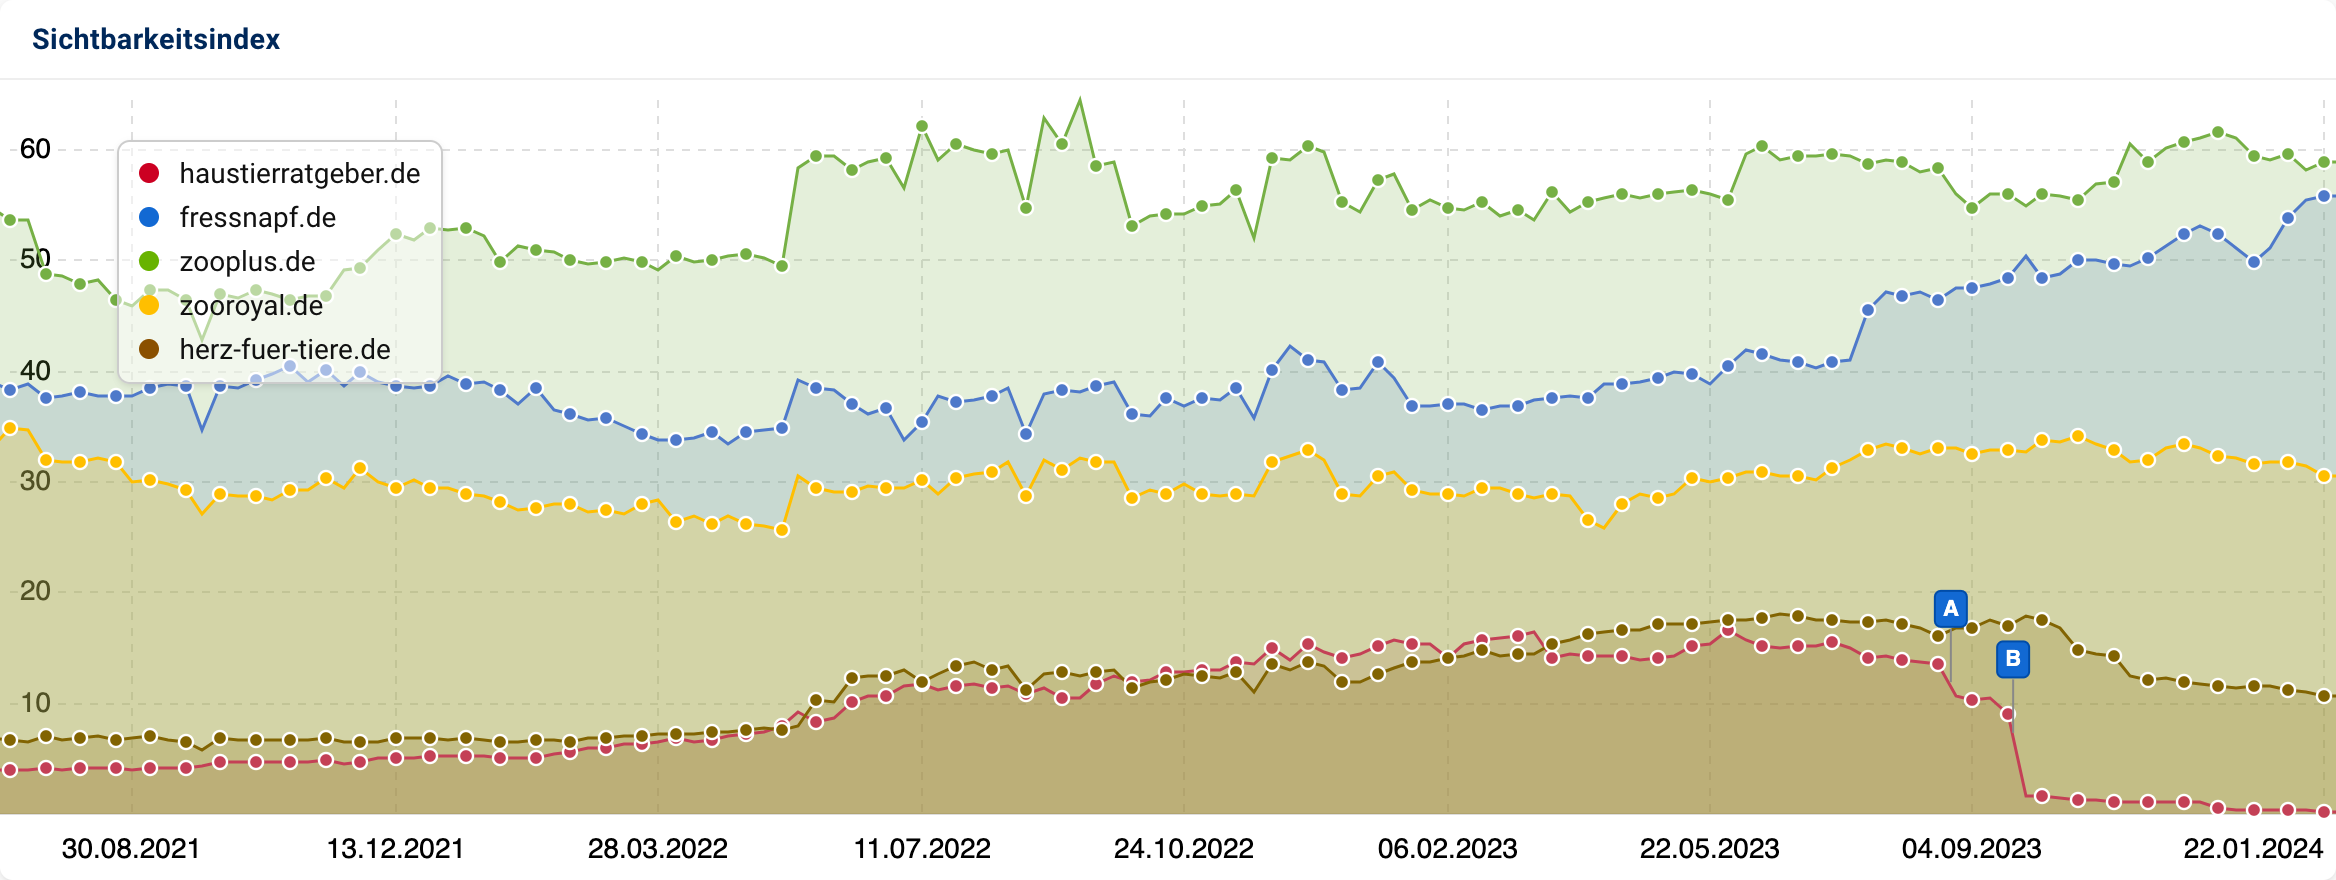 Ein Vergleich der Domains haustierratgeber.de, fressnapf.de, zooplus.de, zooroyal.de und herz-fuer-tiere.de. Die Pins zeigen das Core-Update im August und das Helpful Content Update im September an.